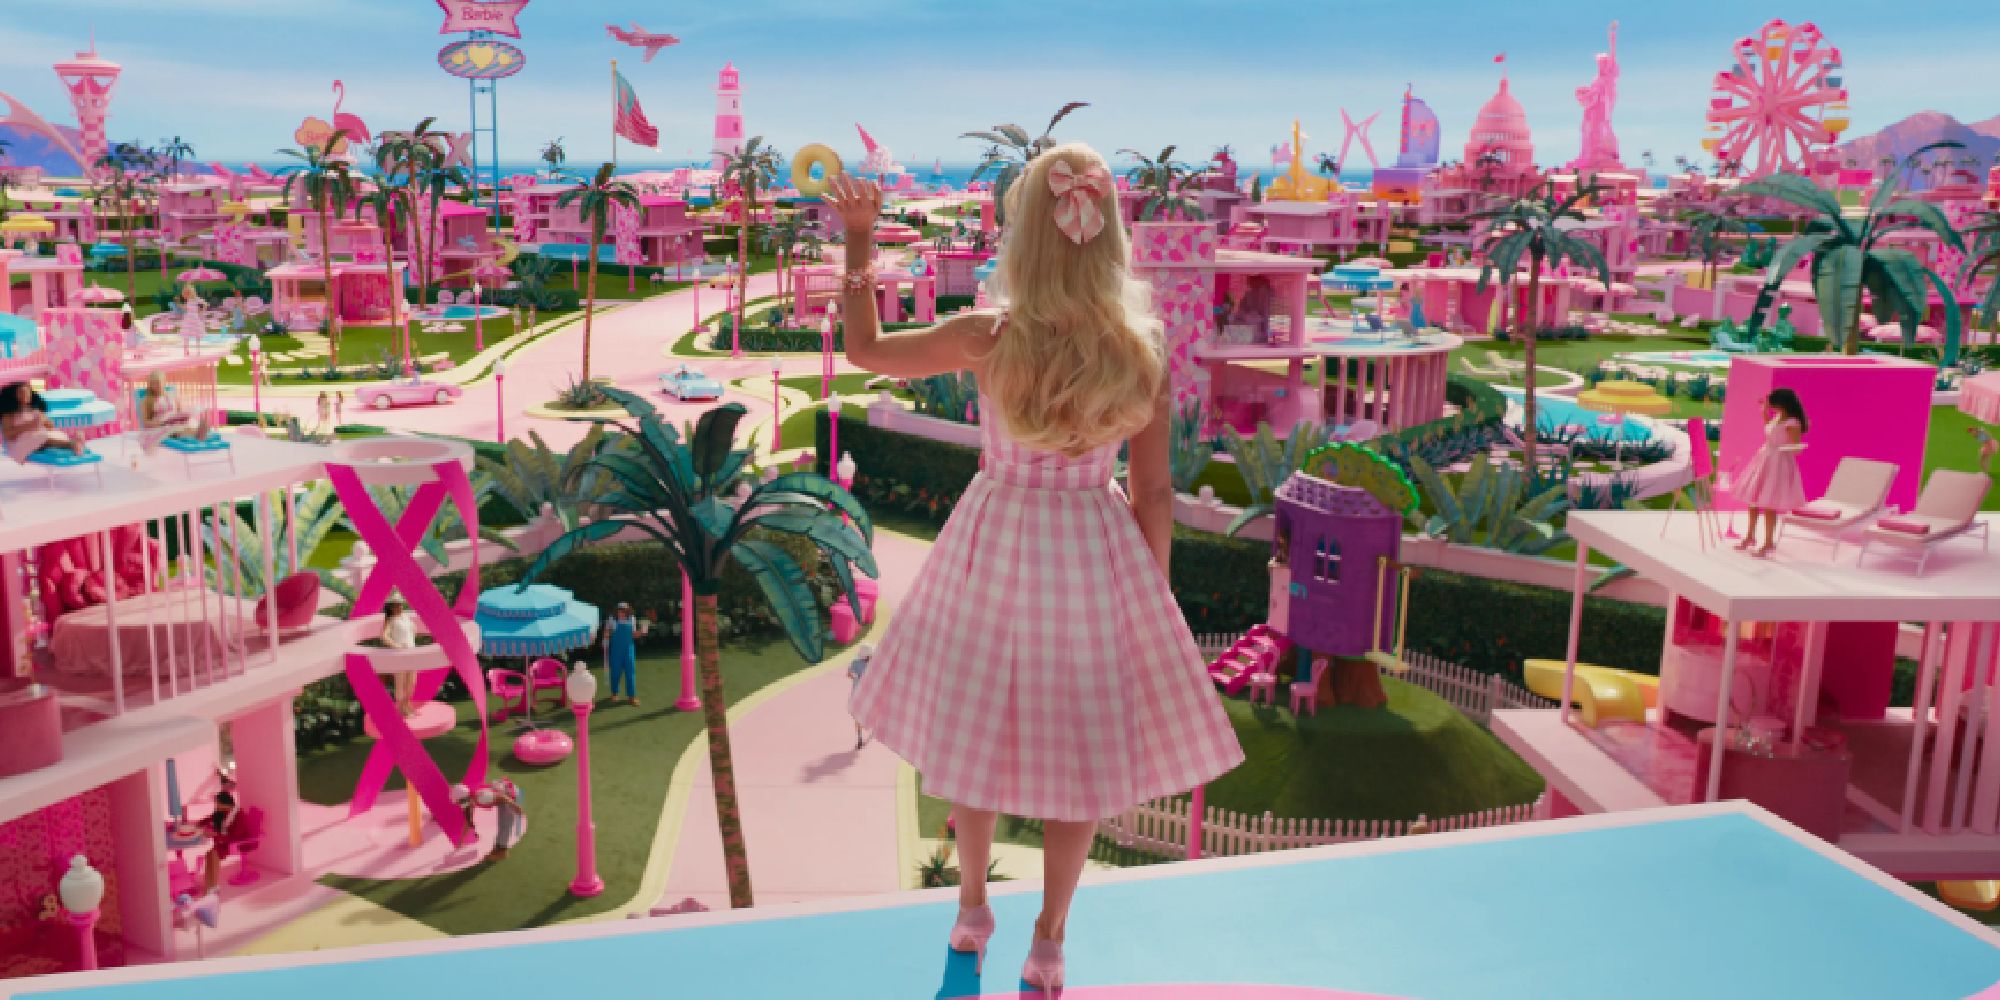 Margot Robbie as Barbie waving at Barbie World in Barbie